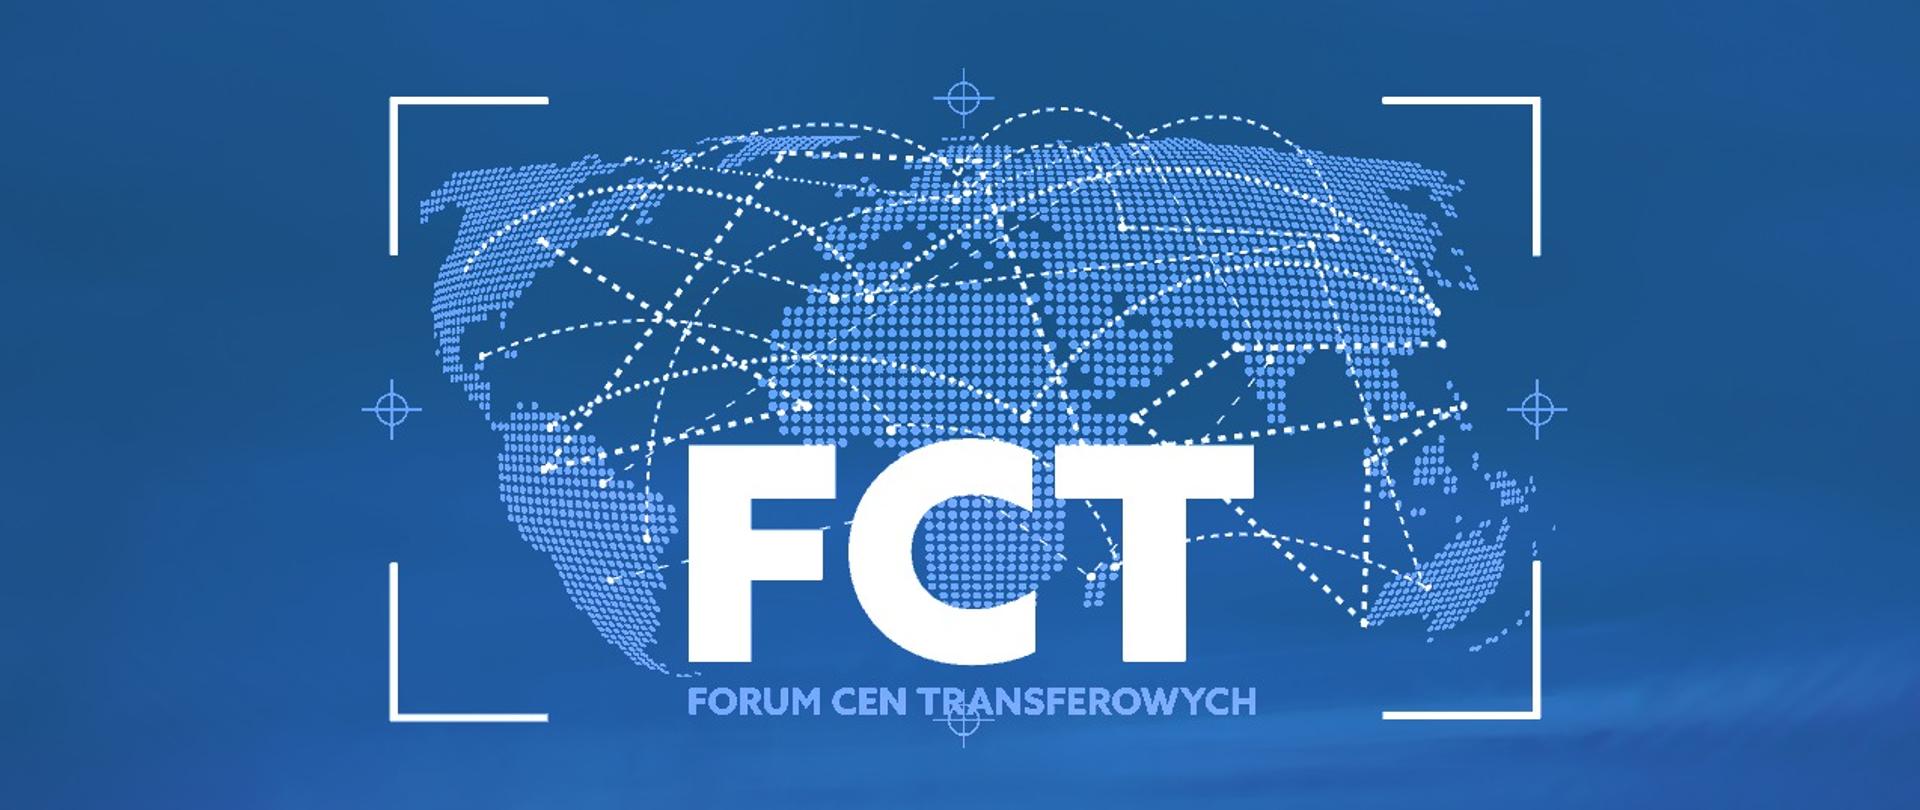 Mapa świata na niebieskim tle plus napis FCT Forum Cen Transferowych.